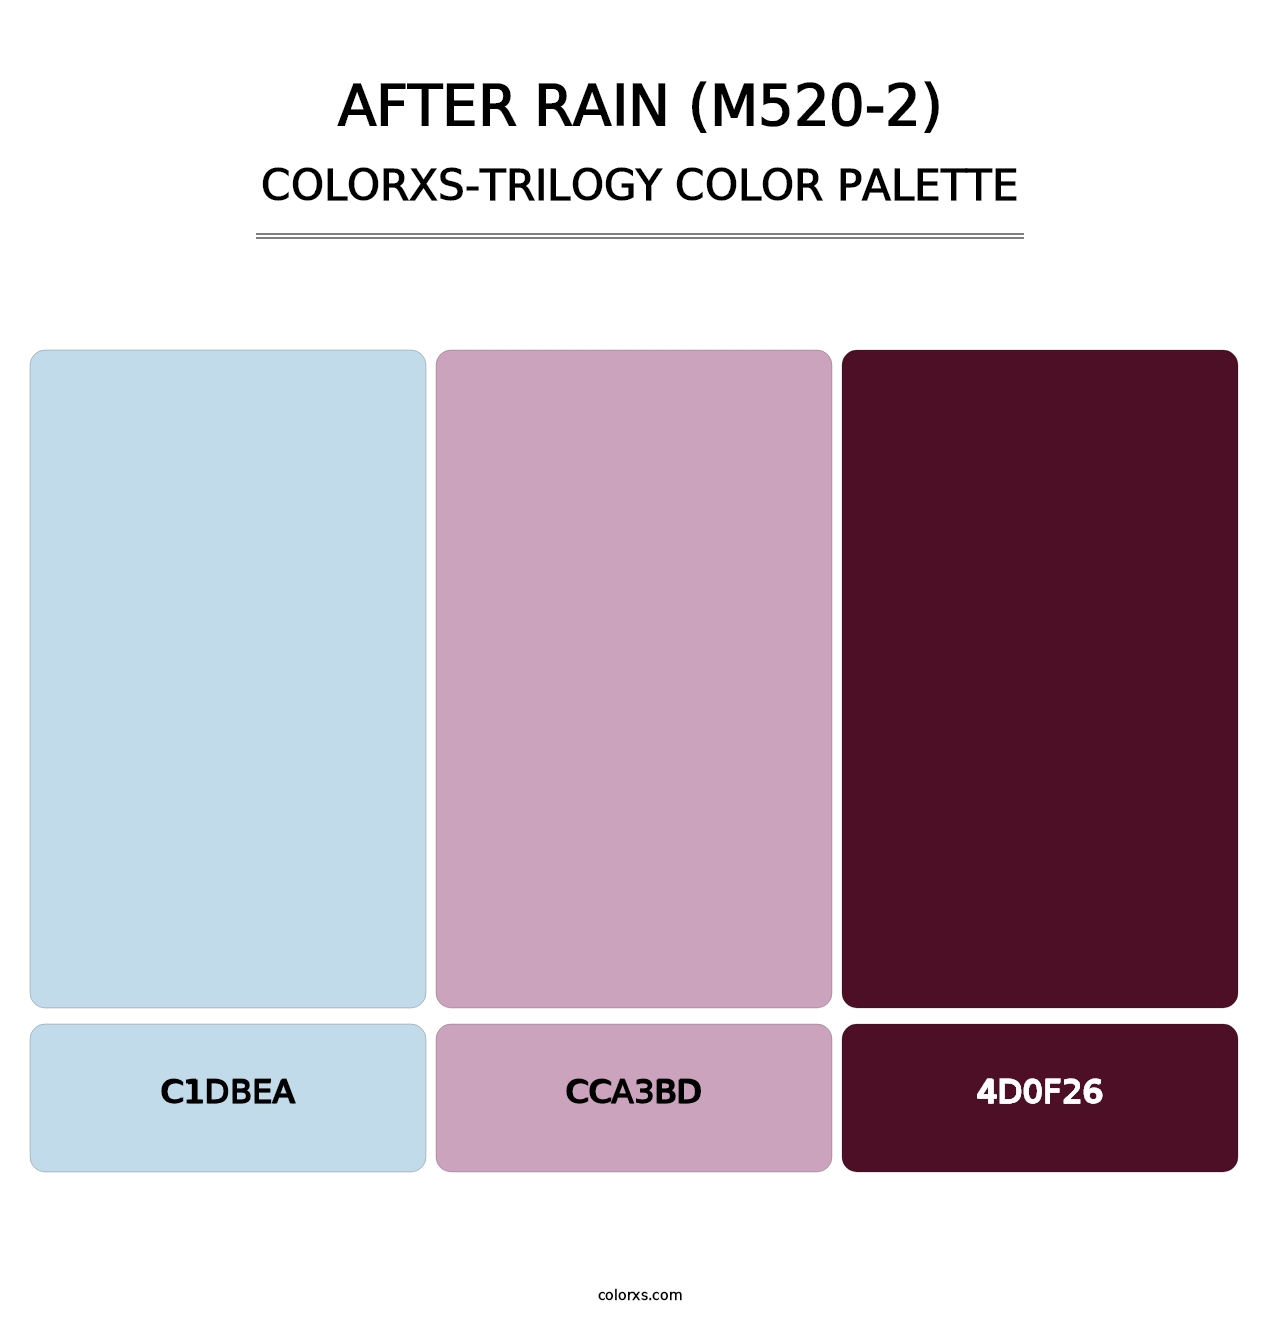 After Rain (M520-2) - Colorxs Trilogy Palette